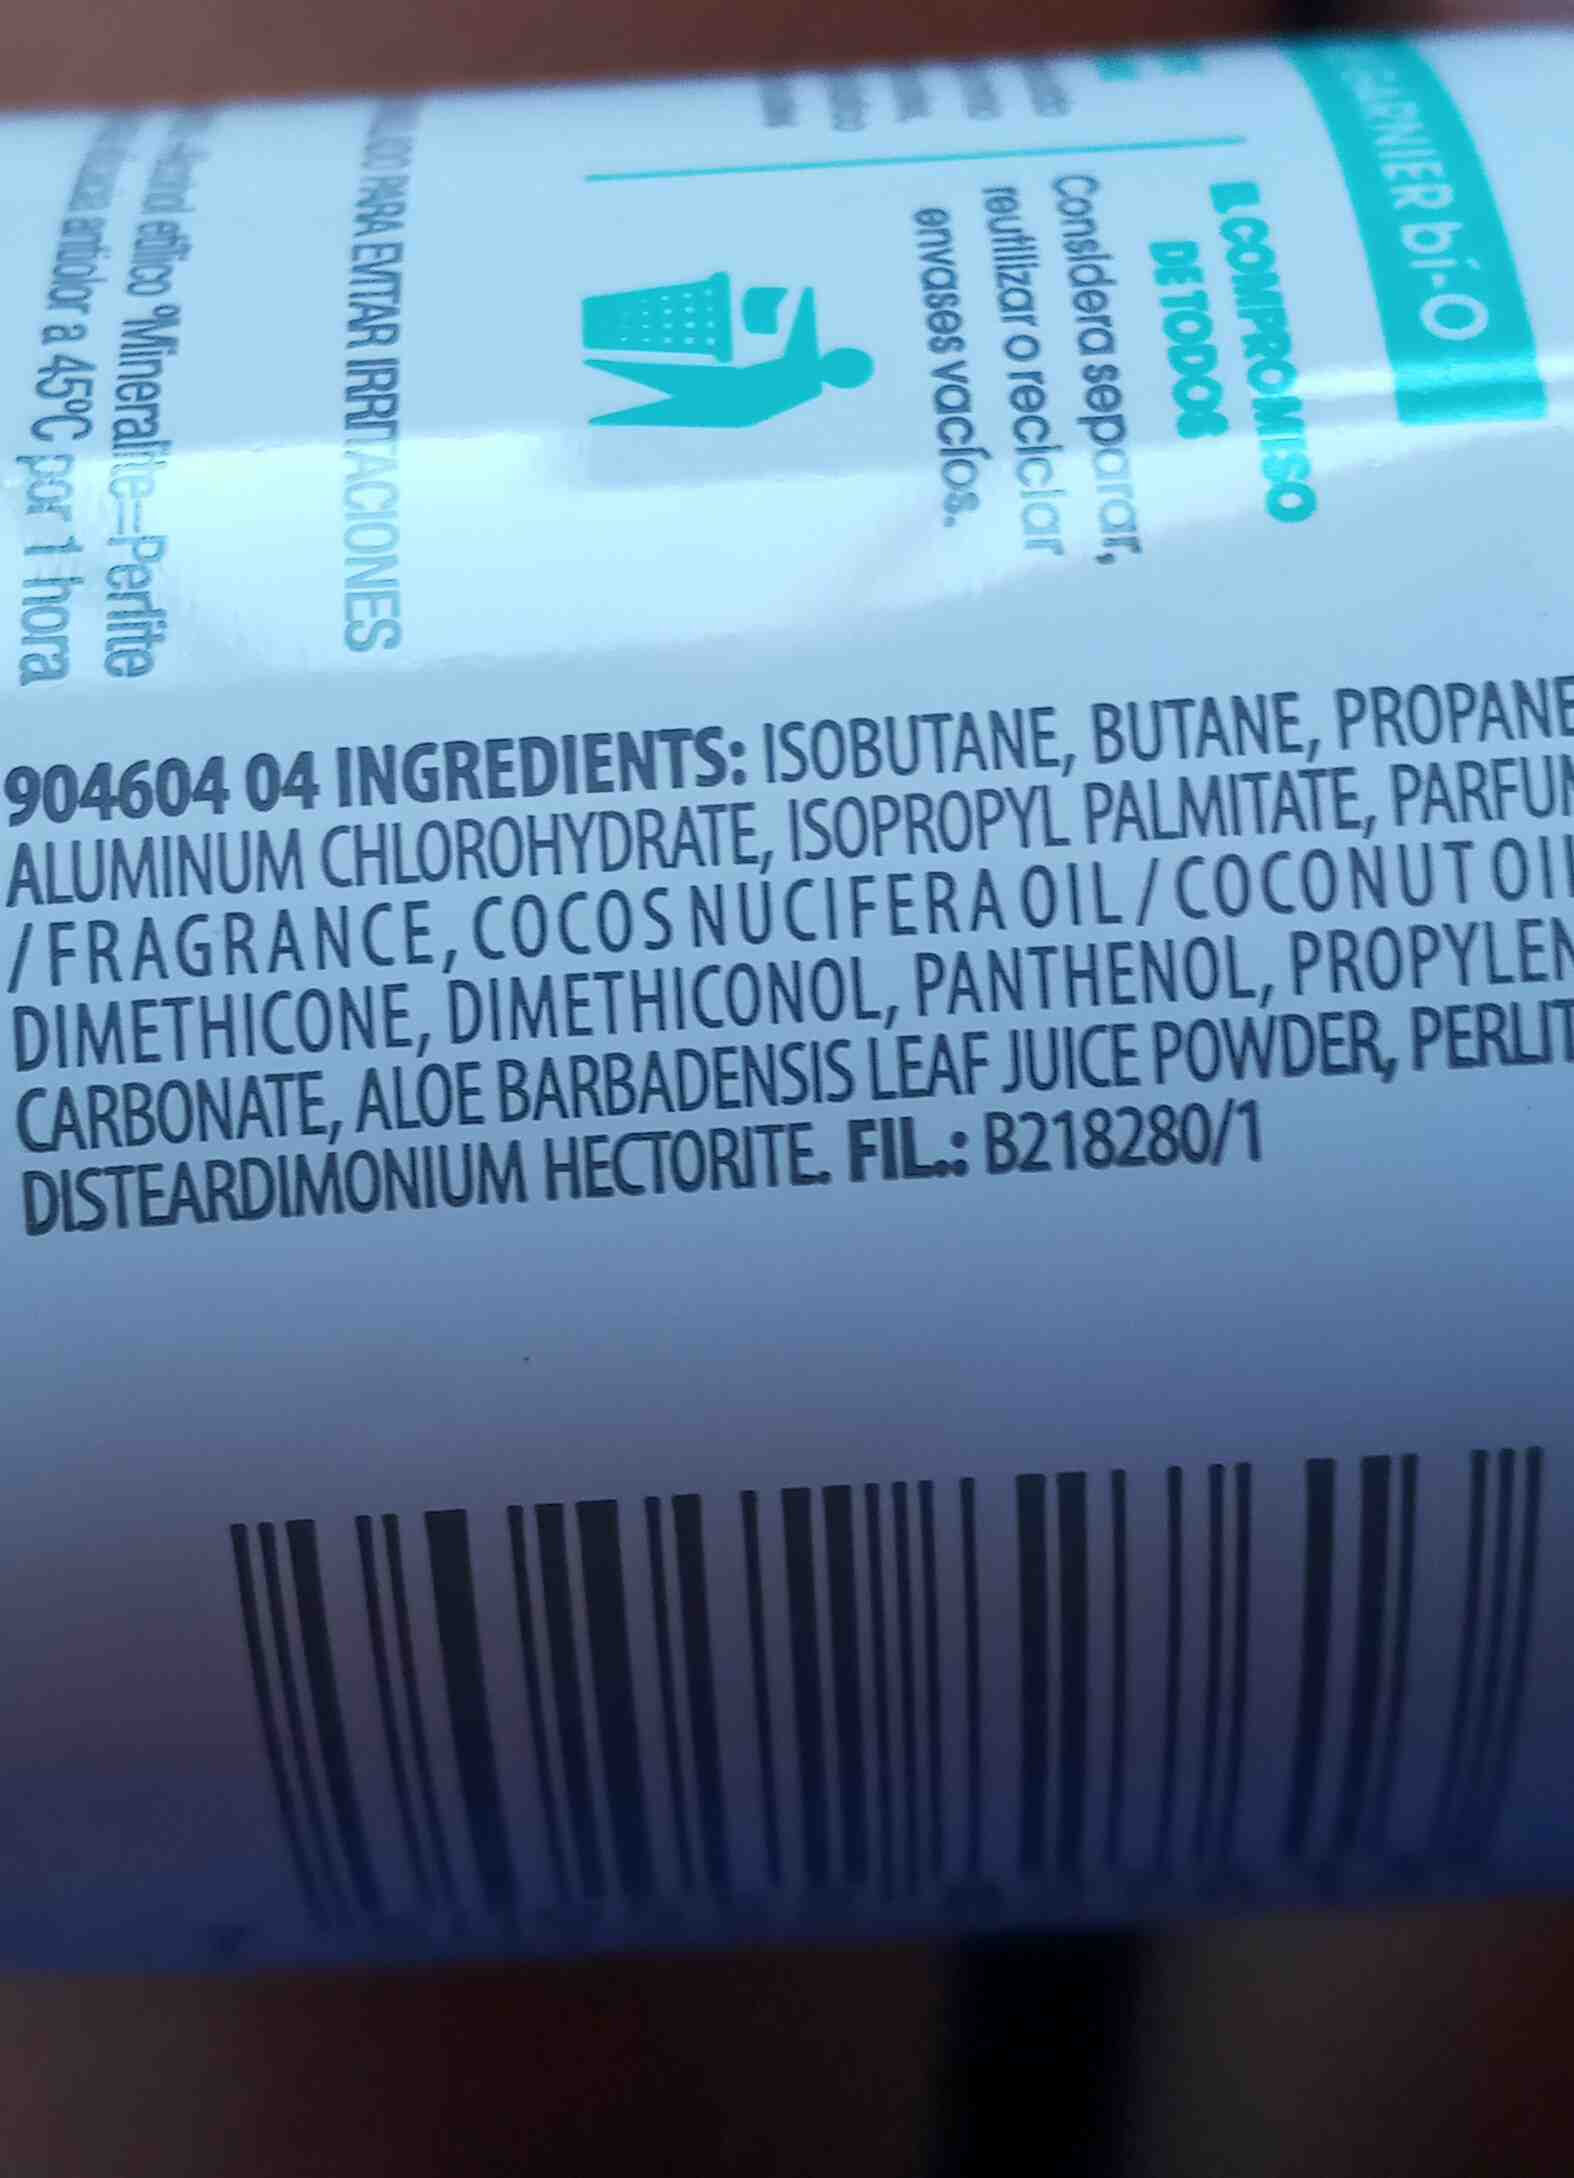 Bi-o antitranspirantes - Ingredients